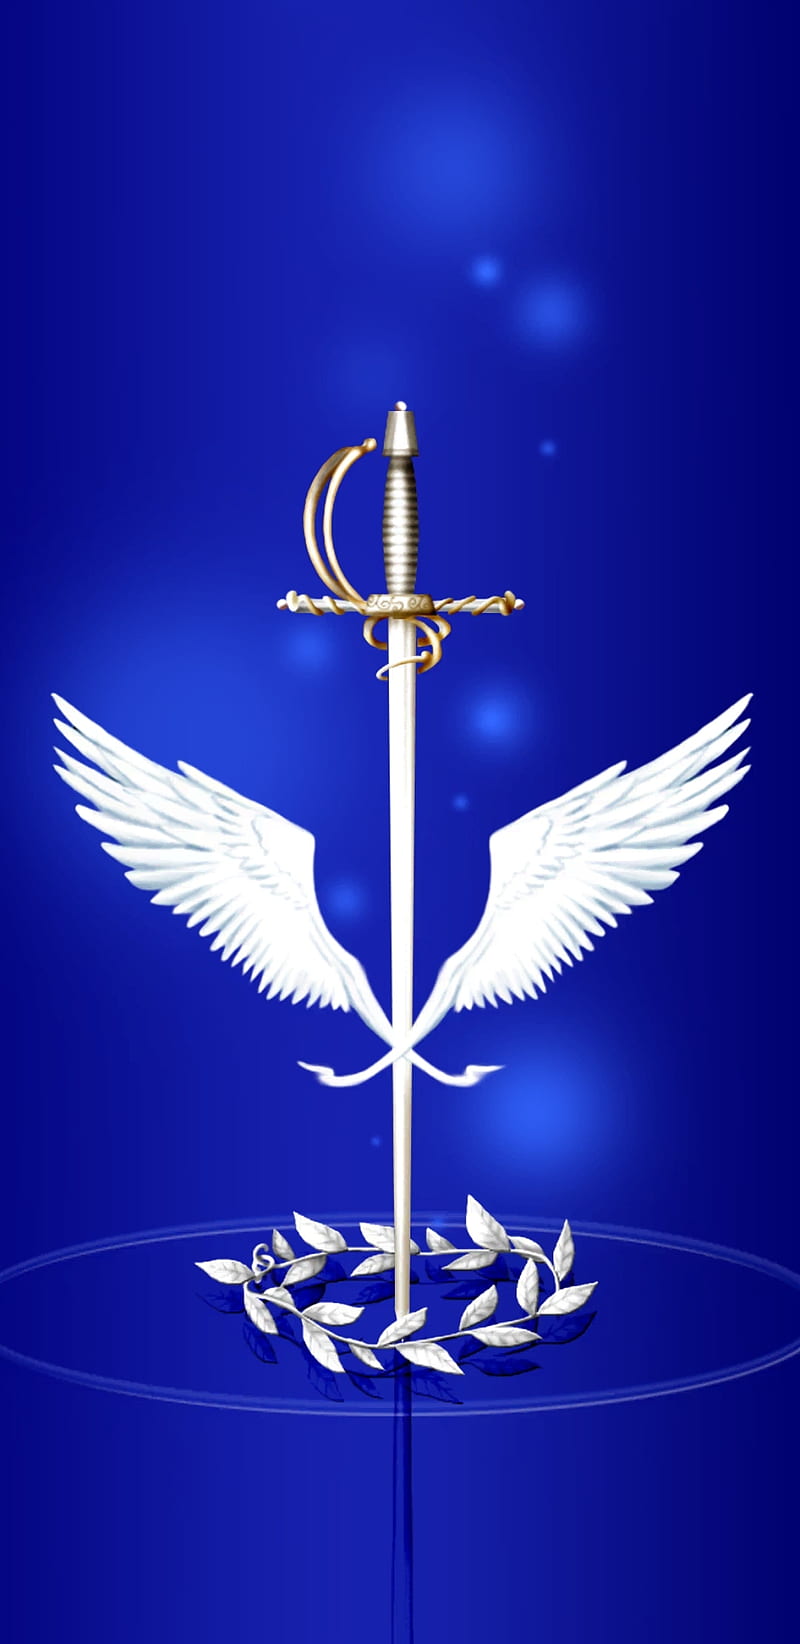 HD-wallpaper-angels-sword-angel-blue-crown-sword-wings.jpg